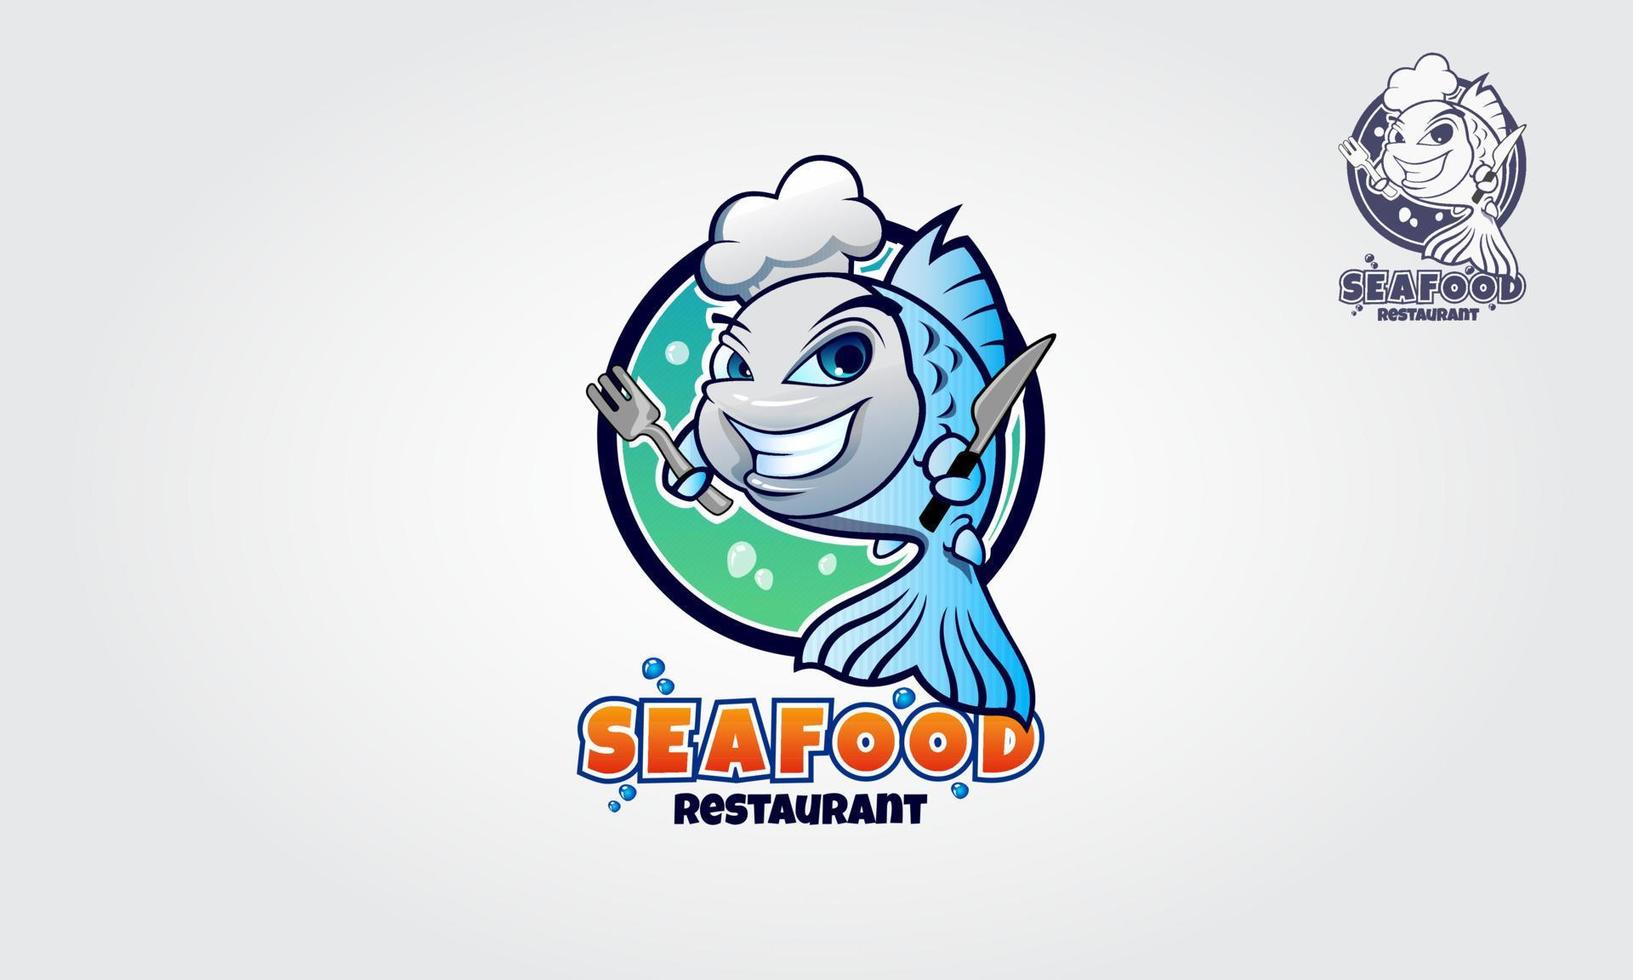 zeevruchten restaurant logo stripfiguur. vector grappige blauwe vis met een koksmuts. een uitstekende logosjabloon die zeer geschikt is voor voedingsbedrijven, restaurants, zeevruchten en cateringbedrijven